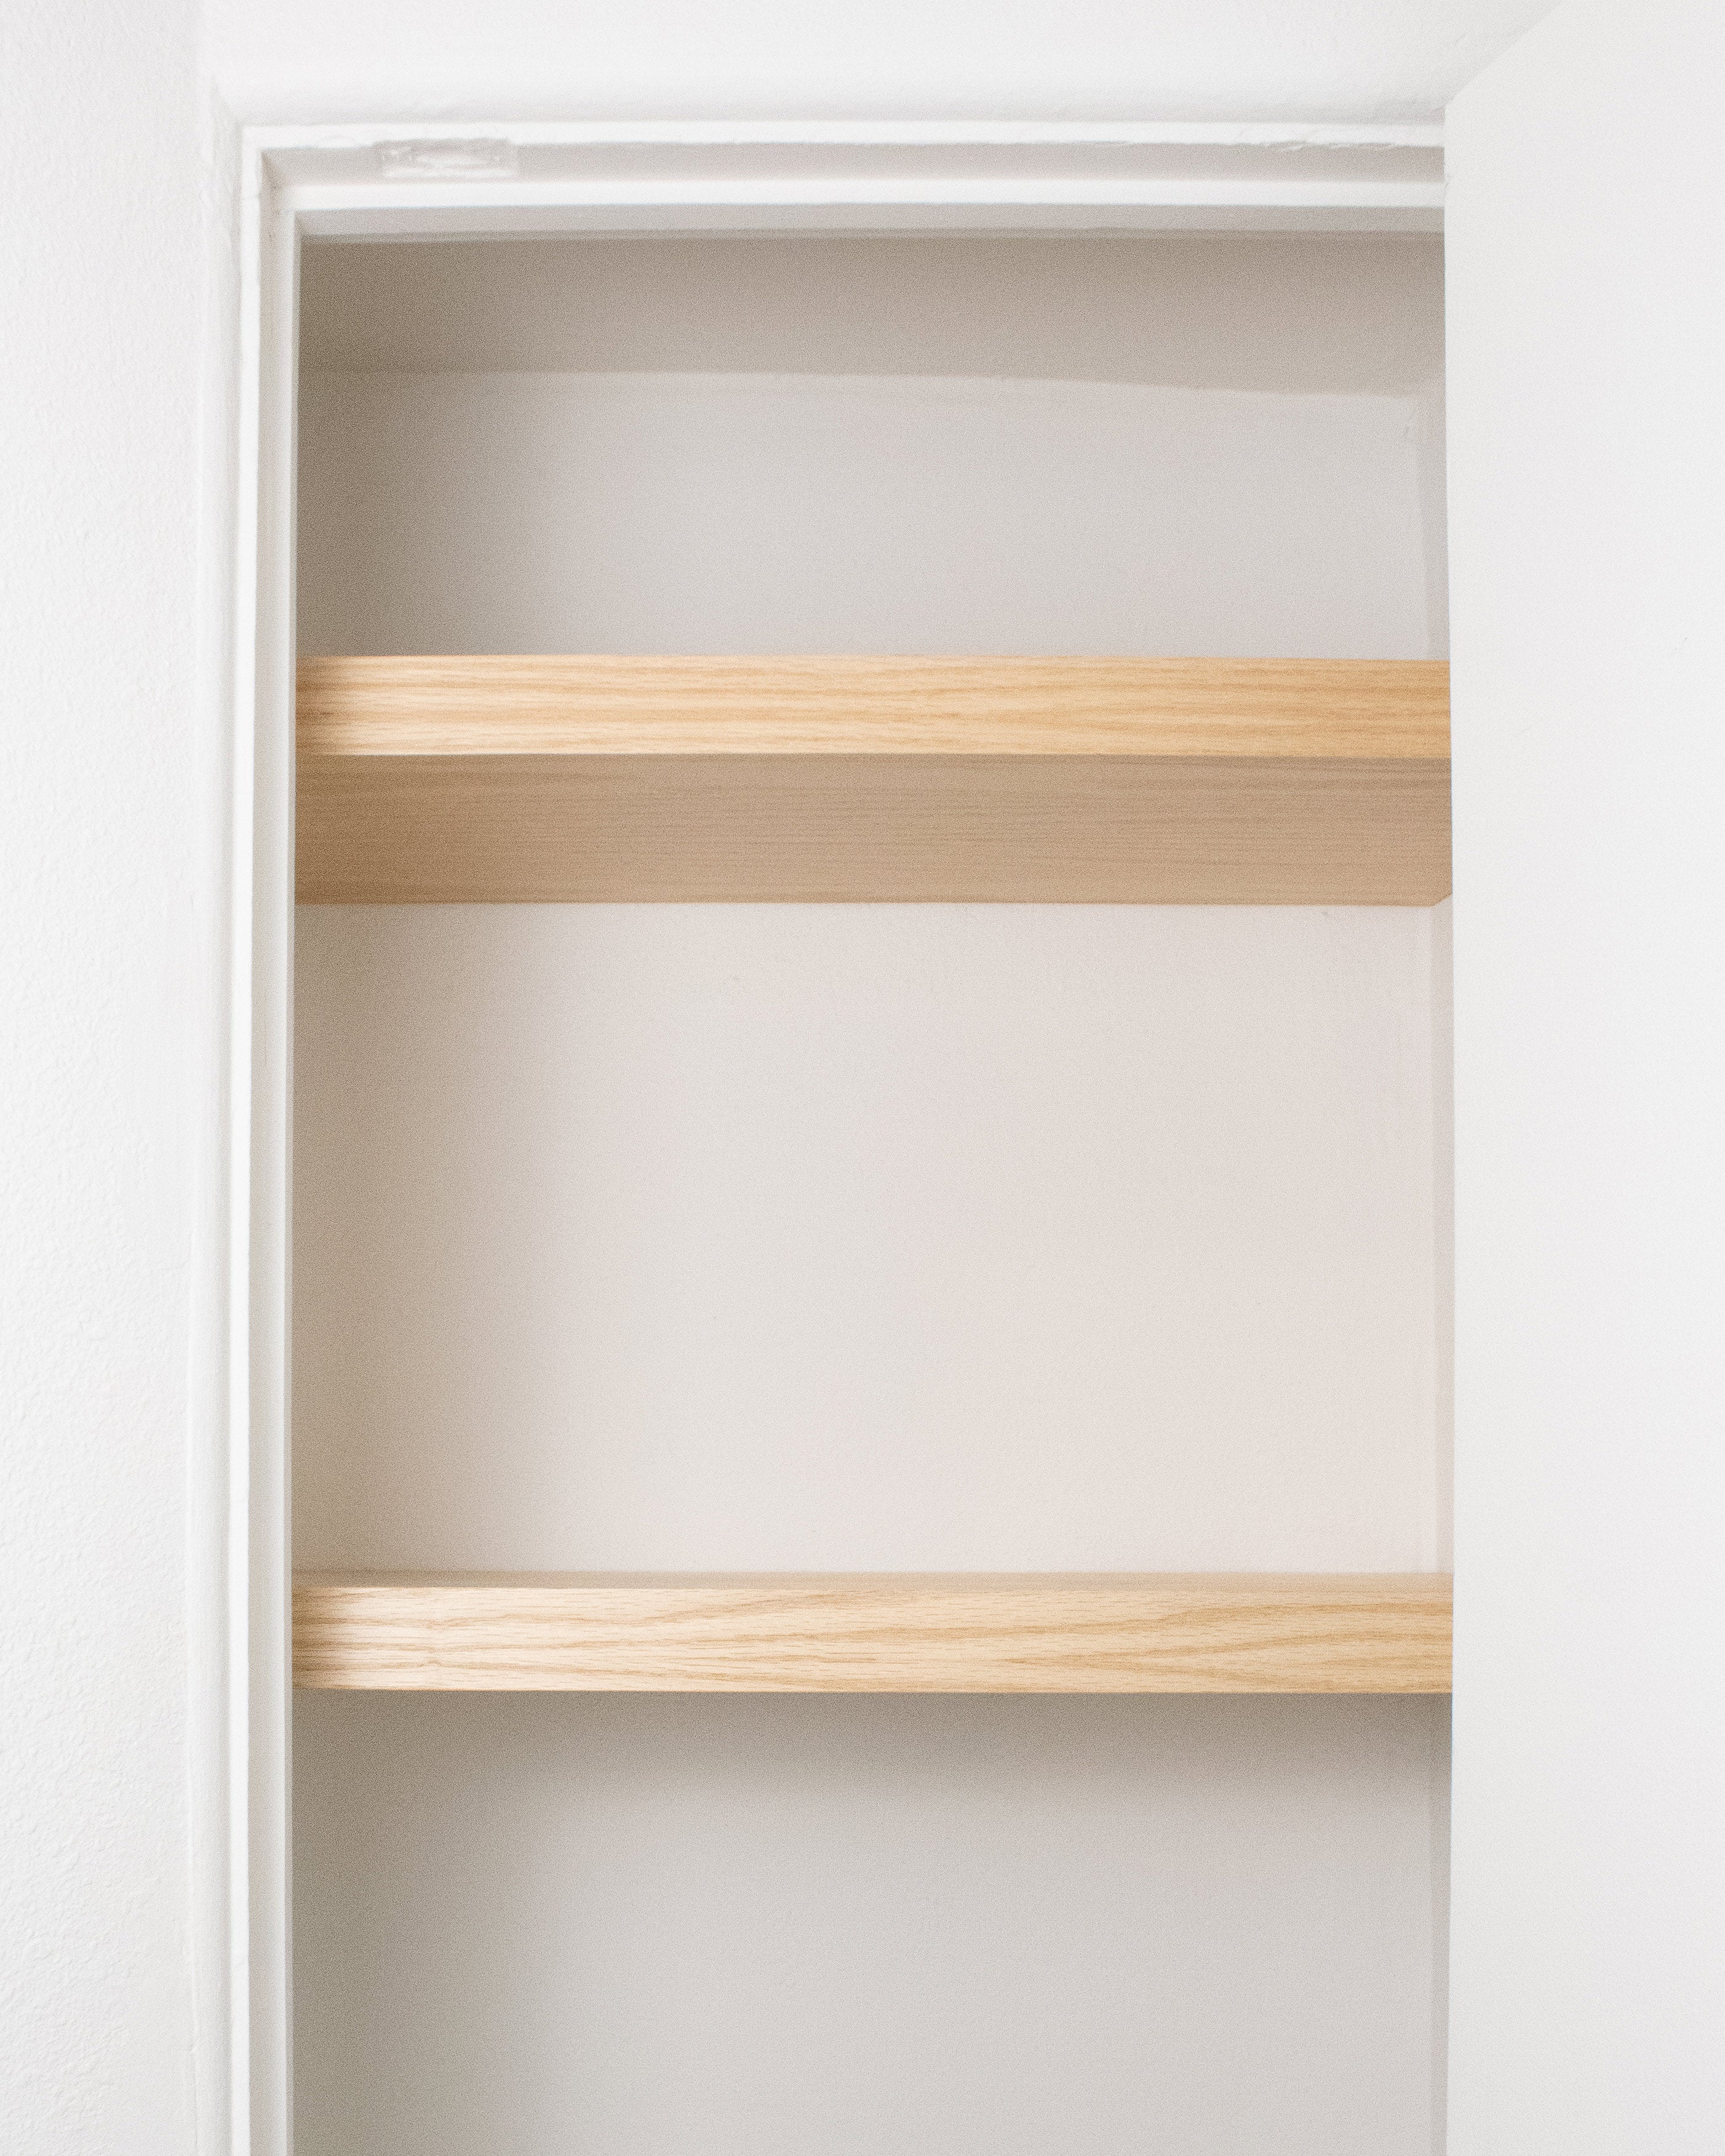 Closet Shelves